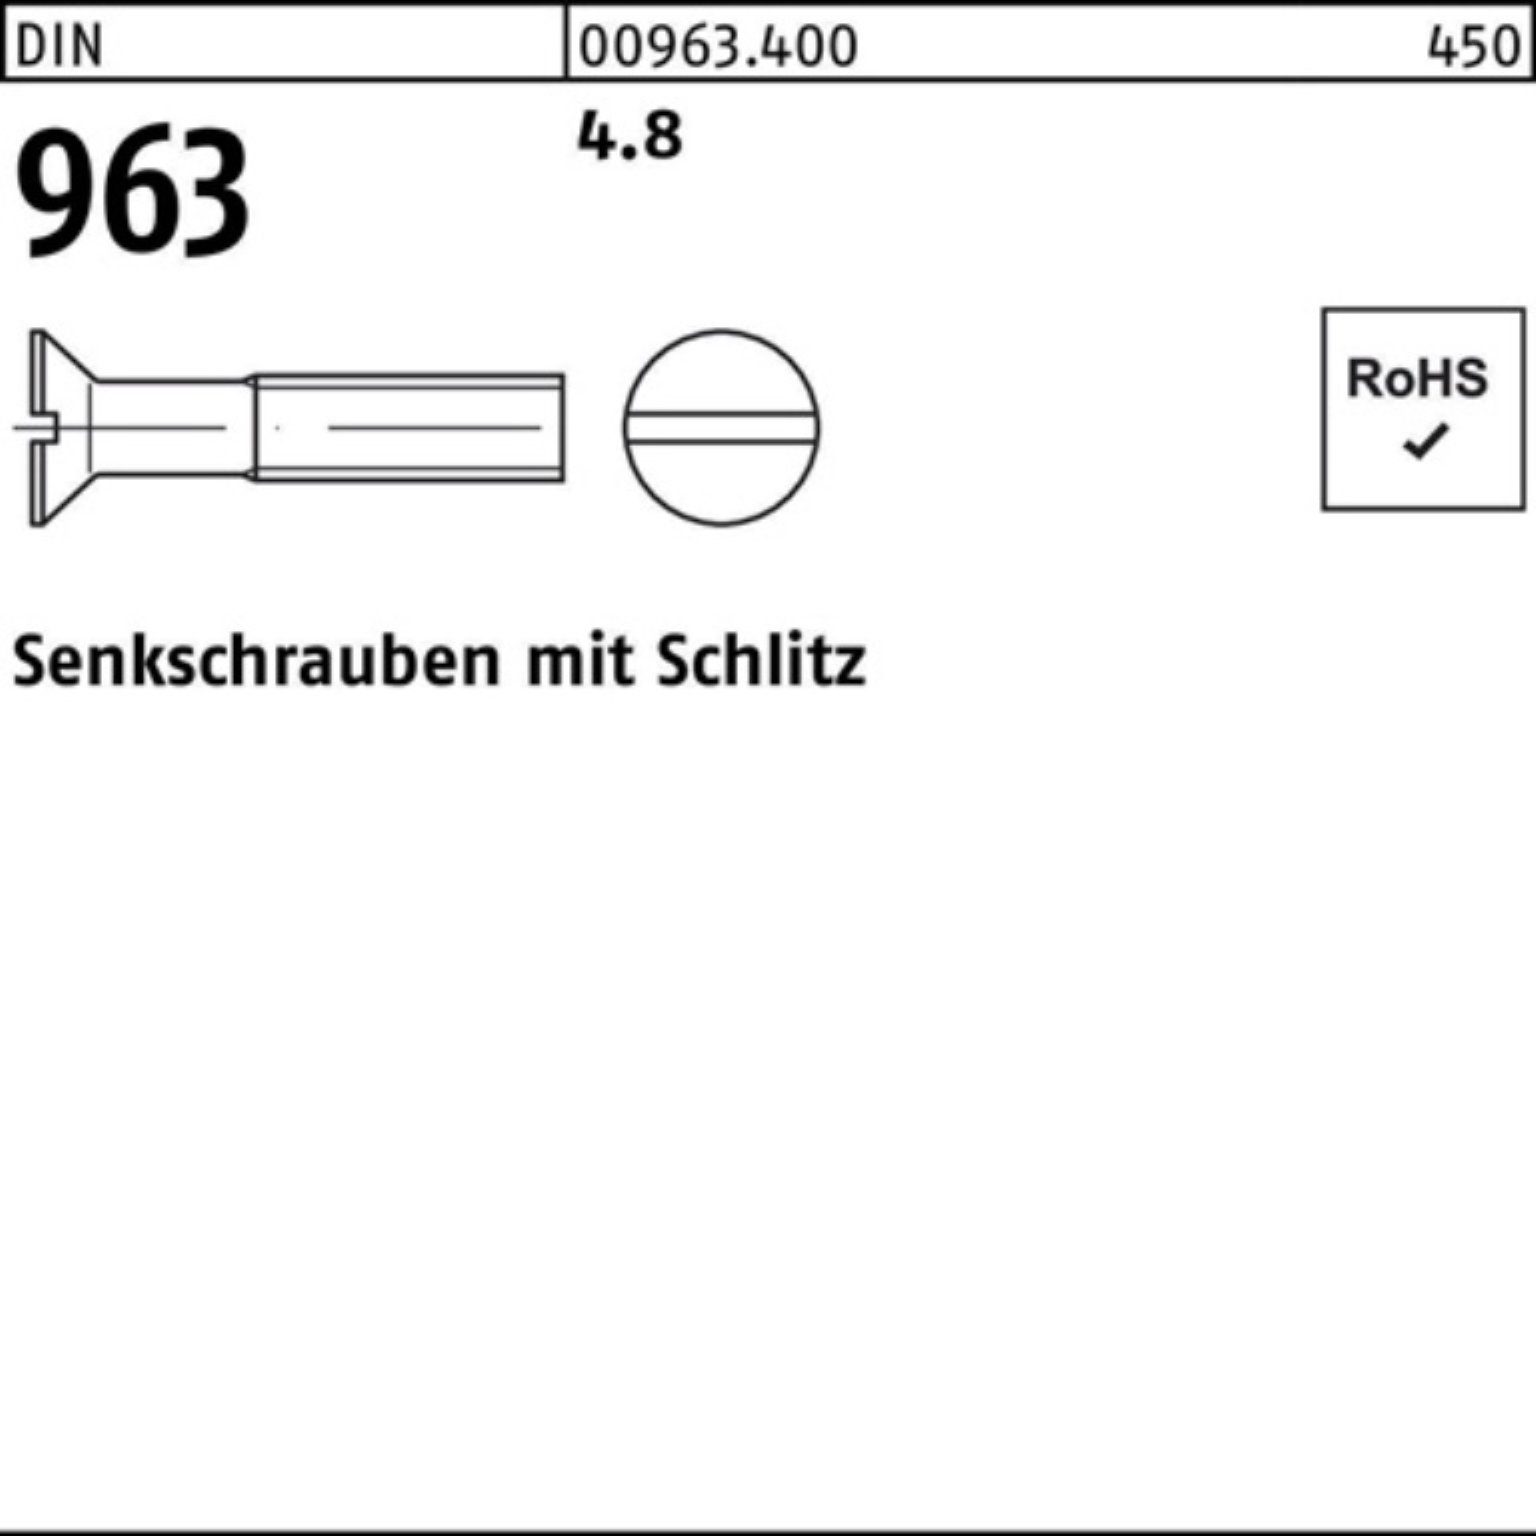 Reyher Senkschraube Schlitz M3x Senkschraube 96 Pack 4.8 DIN 1000er DIN 40 963 1000 Stück